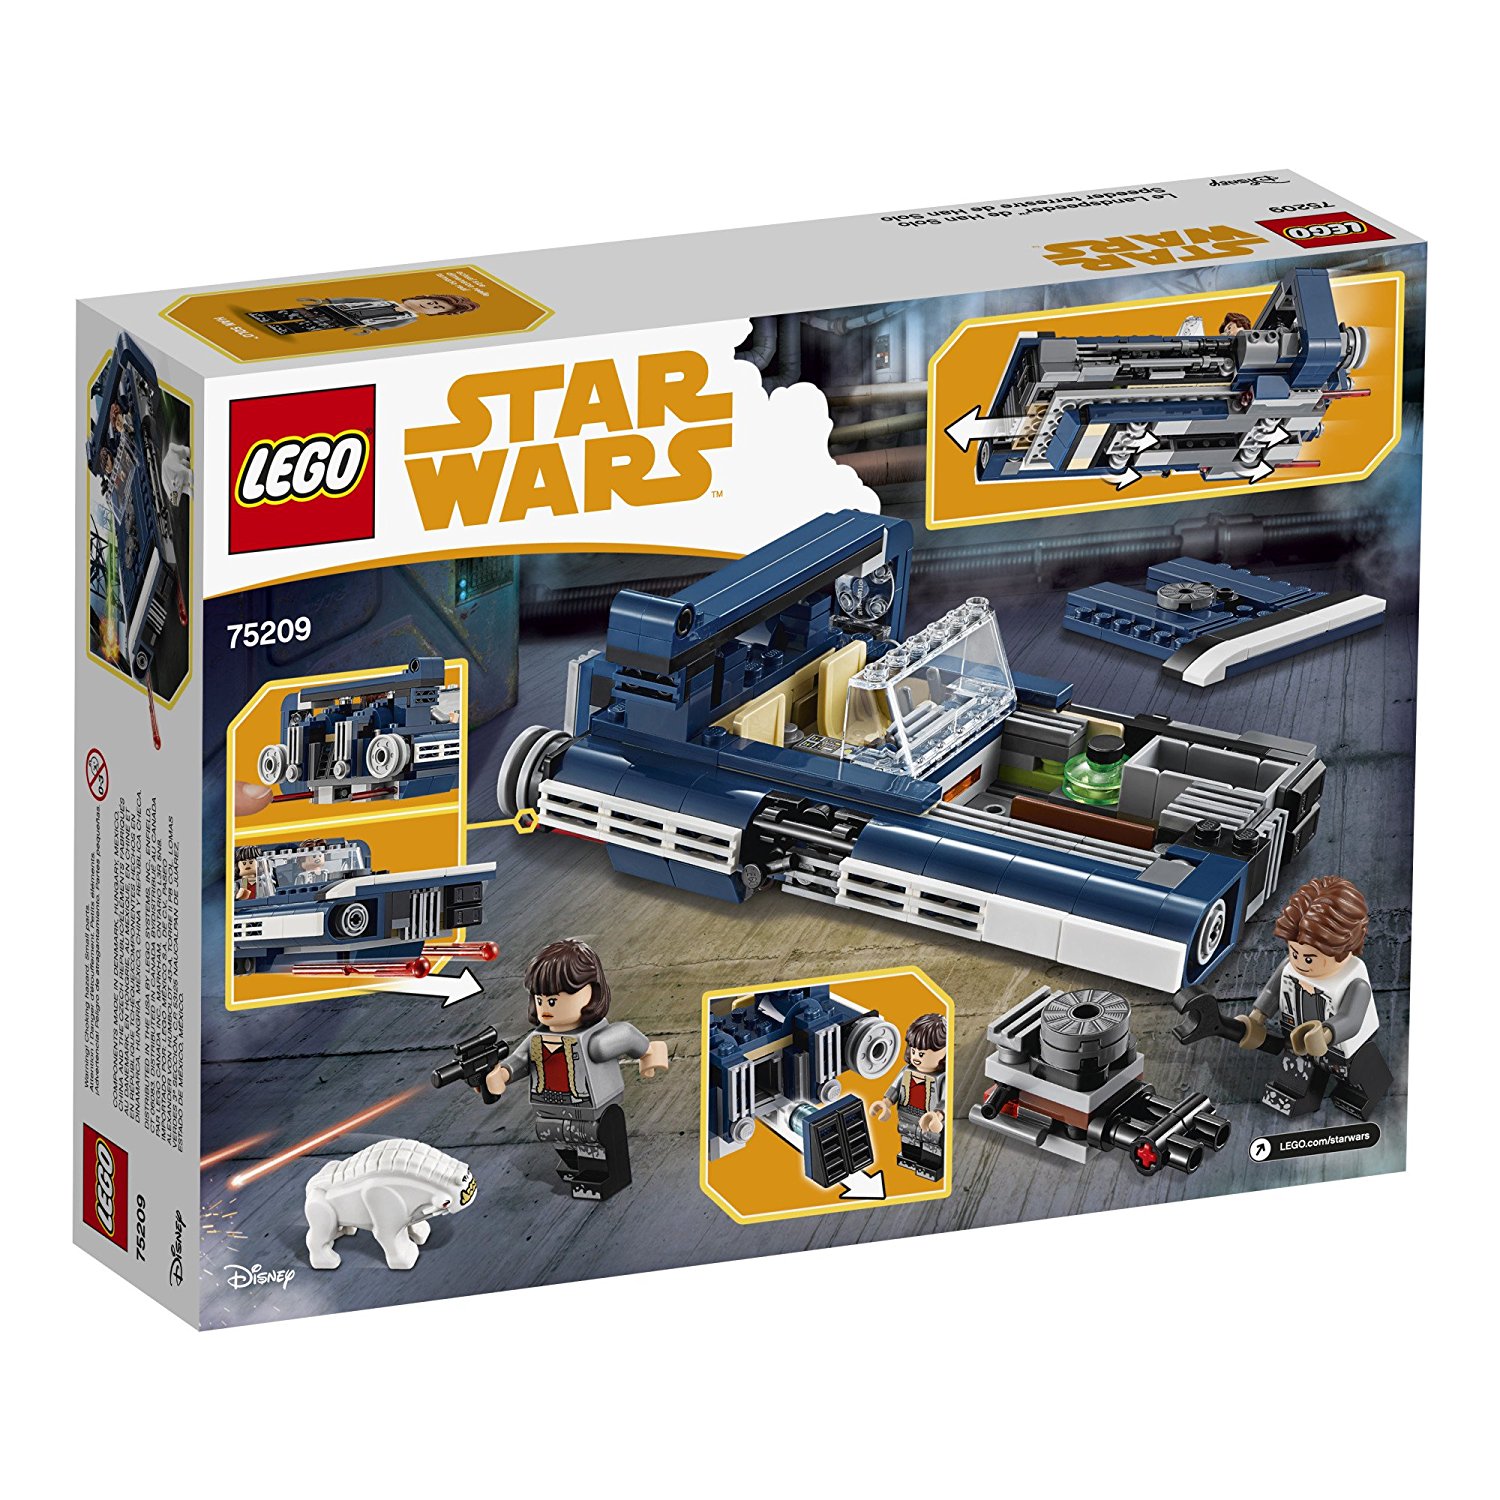 Solo: ASWS Han Solo's Landspeeder Lego Set 2